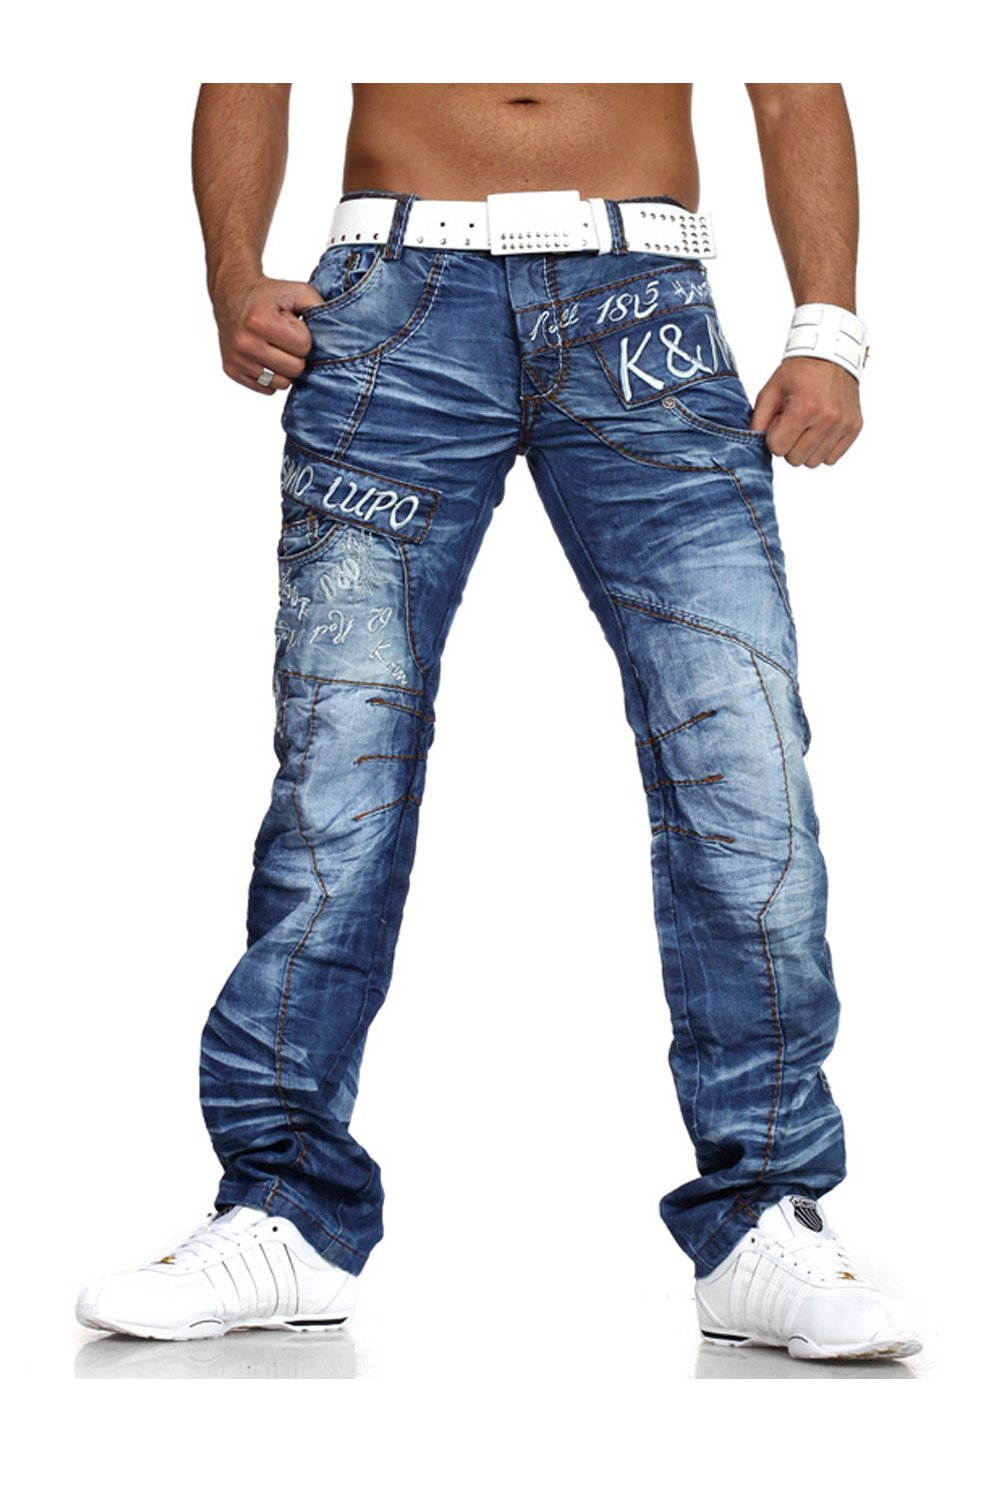 Купить мужские джинсы оригиналы в москве